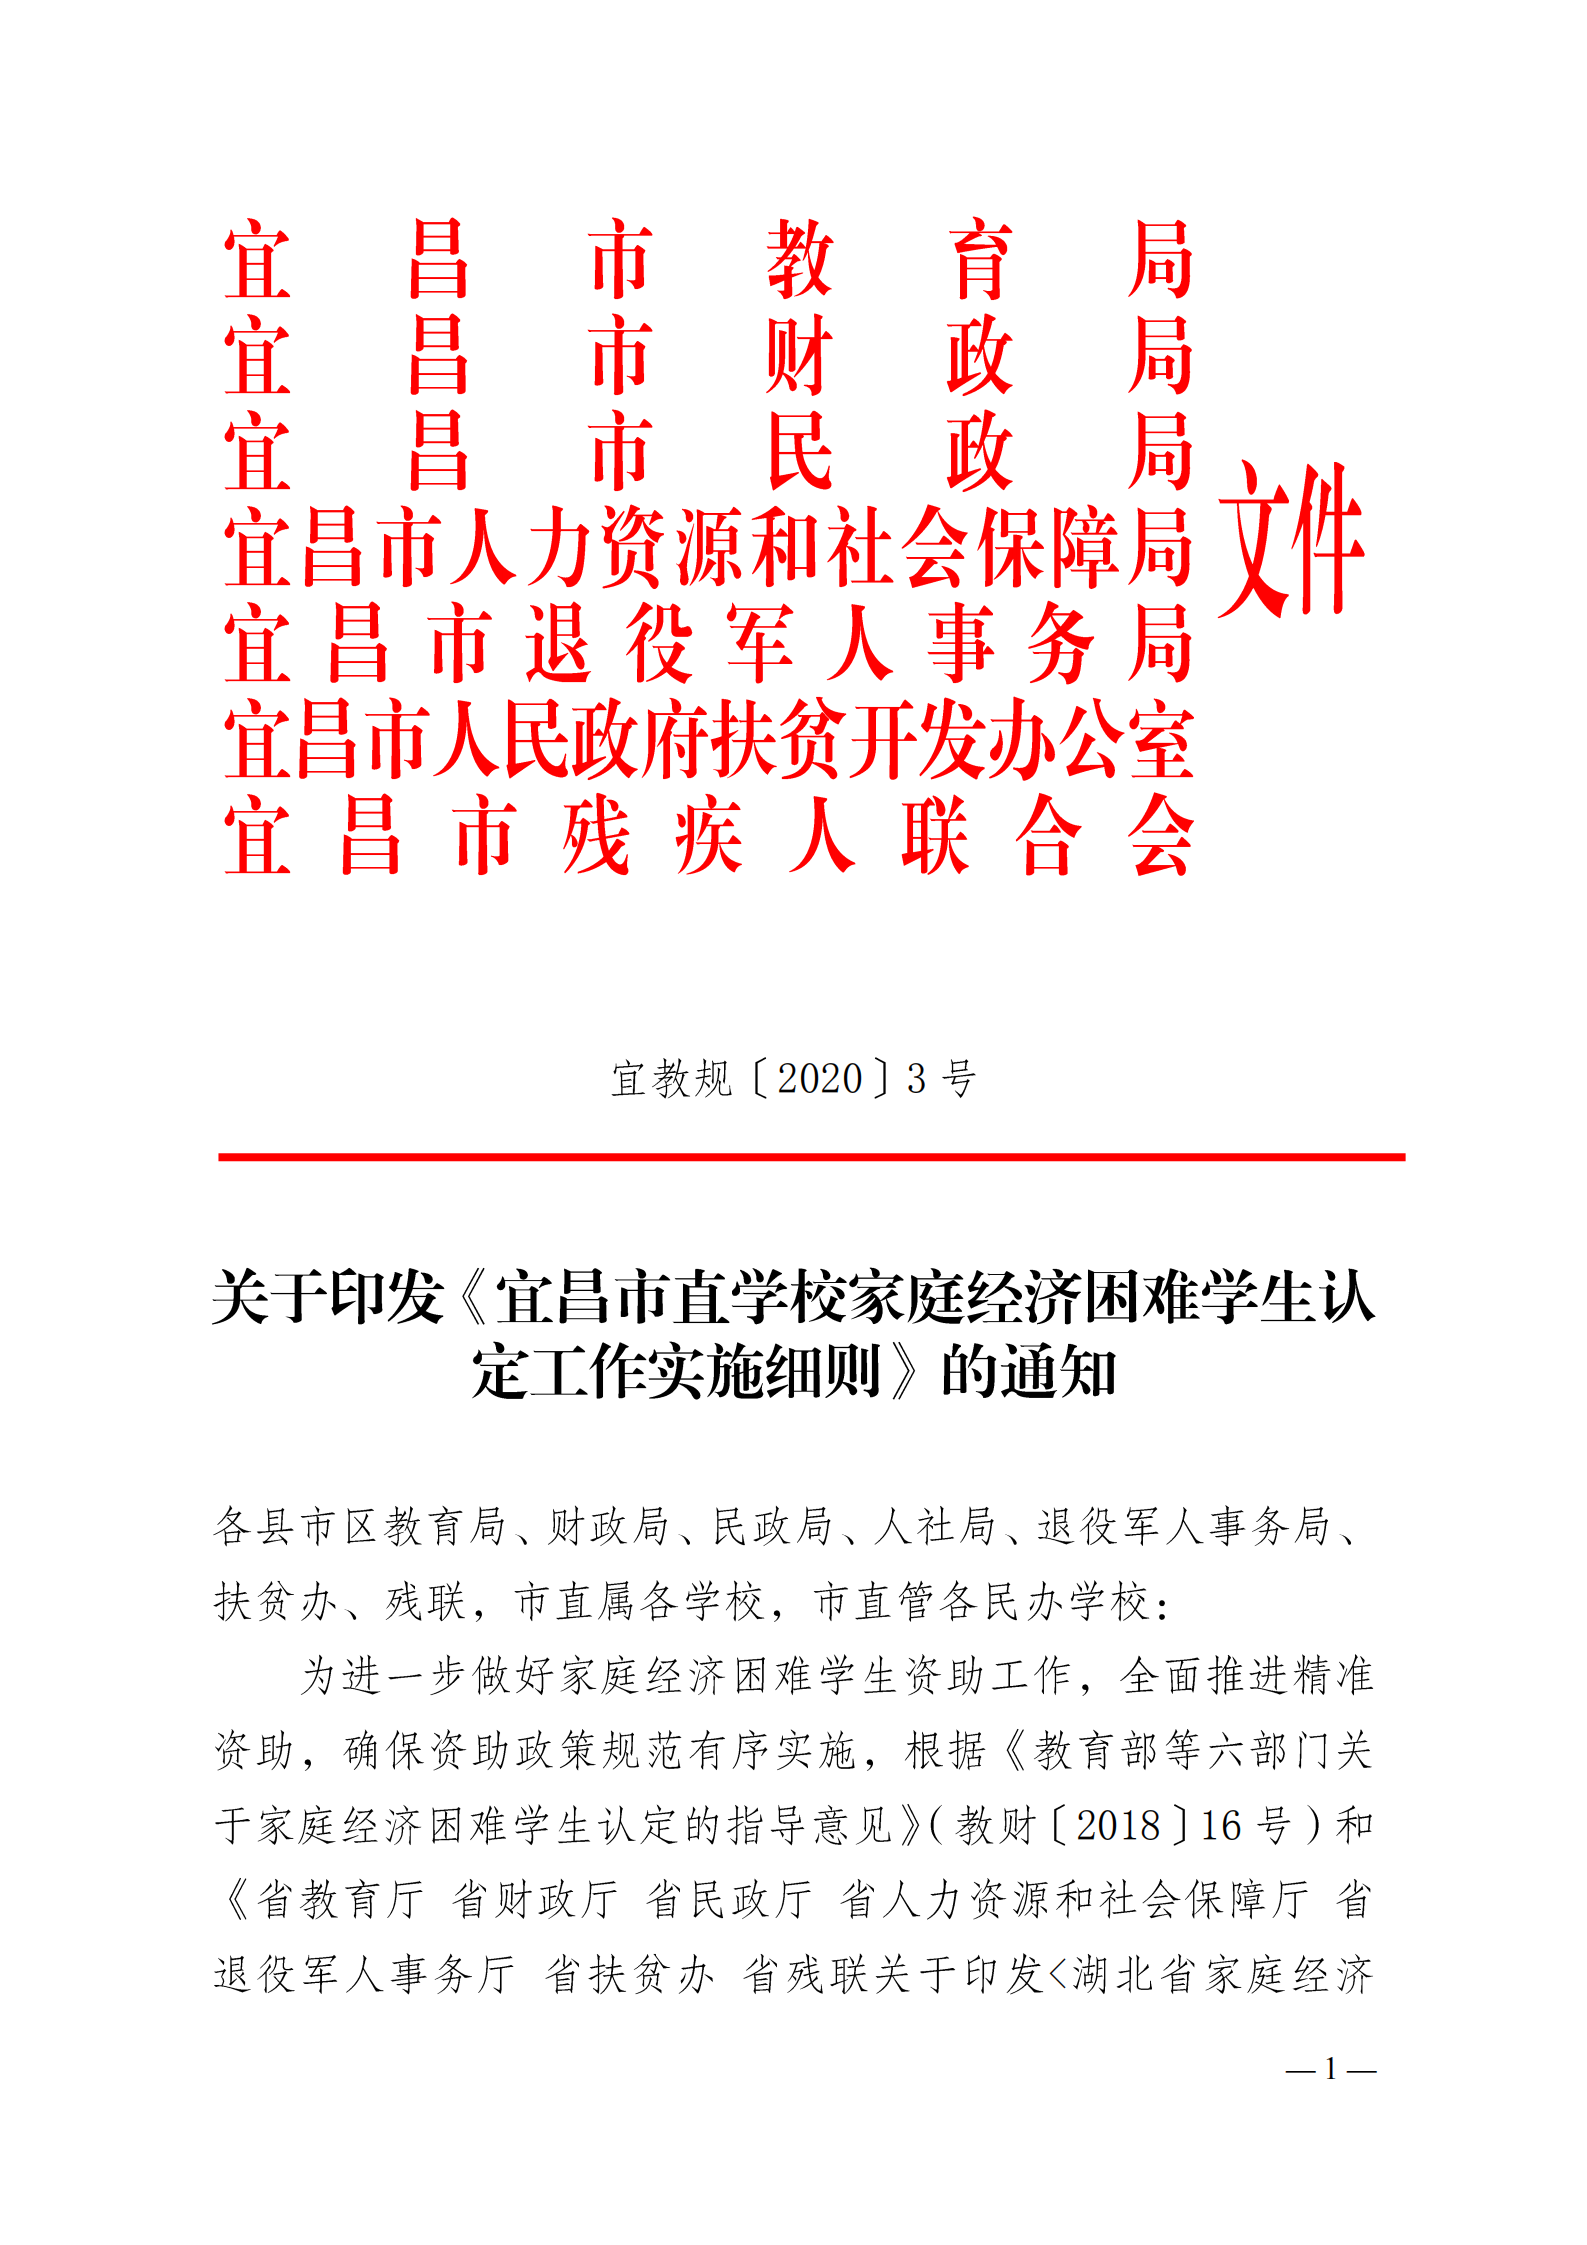 关于印发《宜昌市直学校家庭经济困难学生认定工作实施细则》的通知